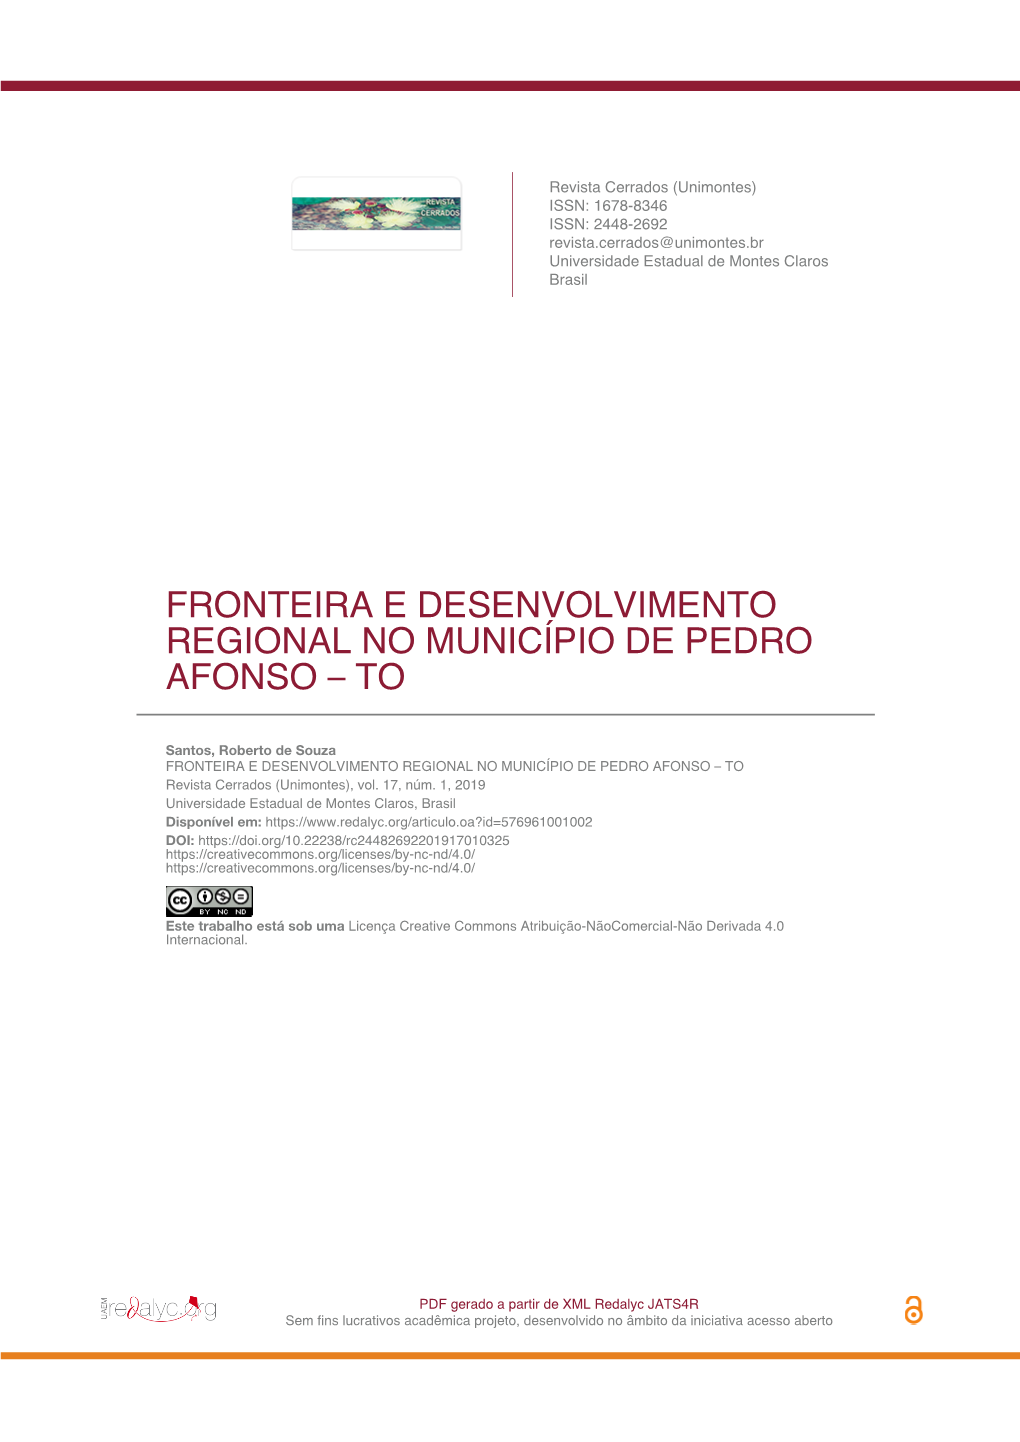 Fronteira E Desenvolvimento Regional No Município De Pedro Afonso – To